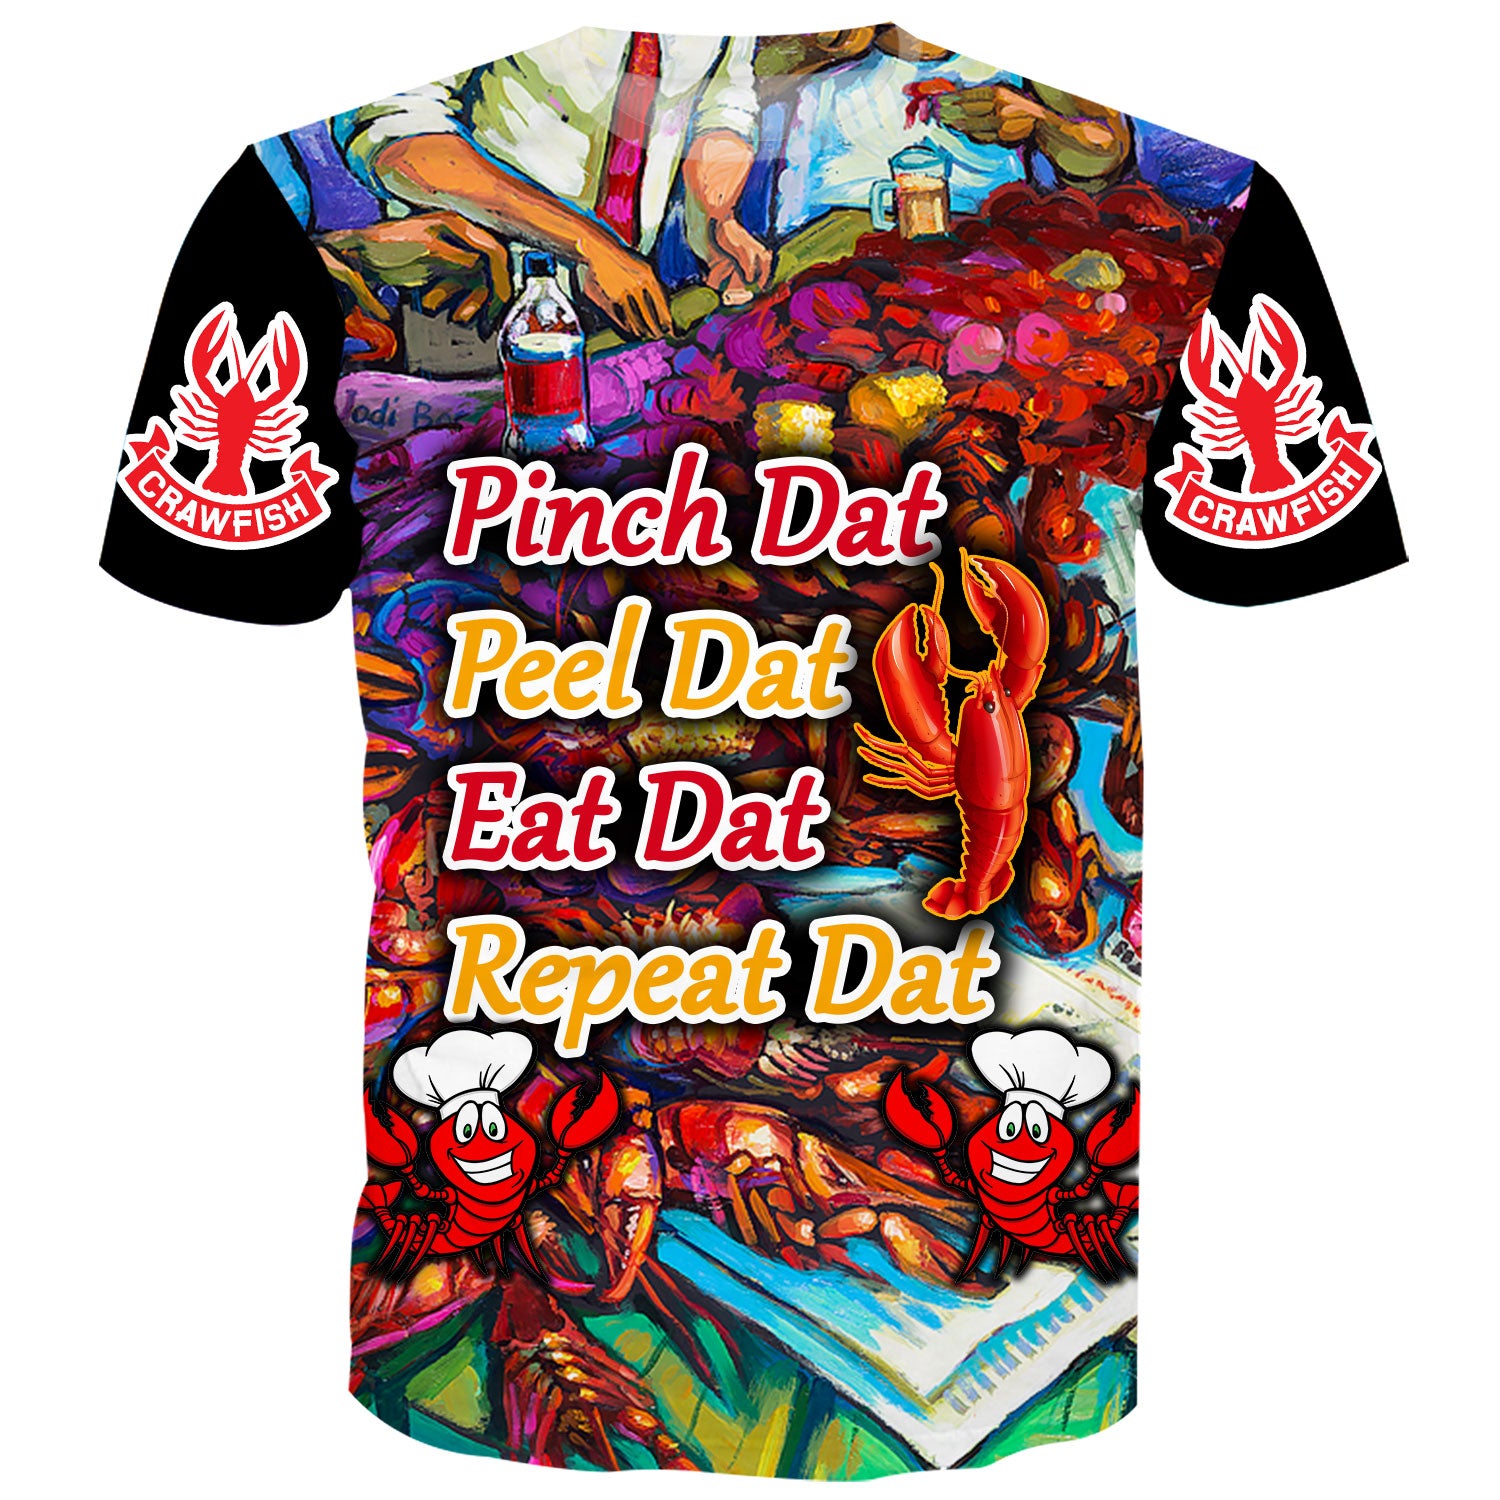 Pinch Dat, Peel Dat - T-Shirt